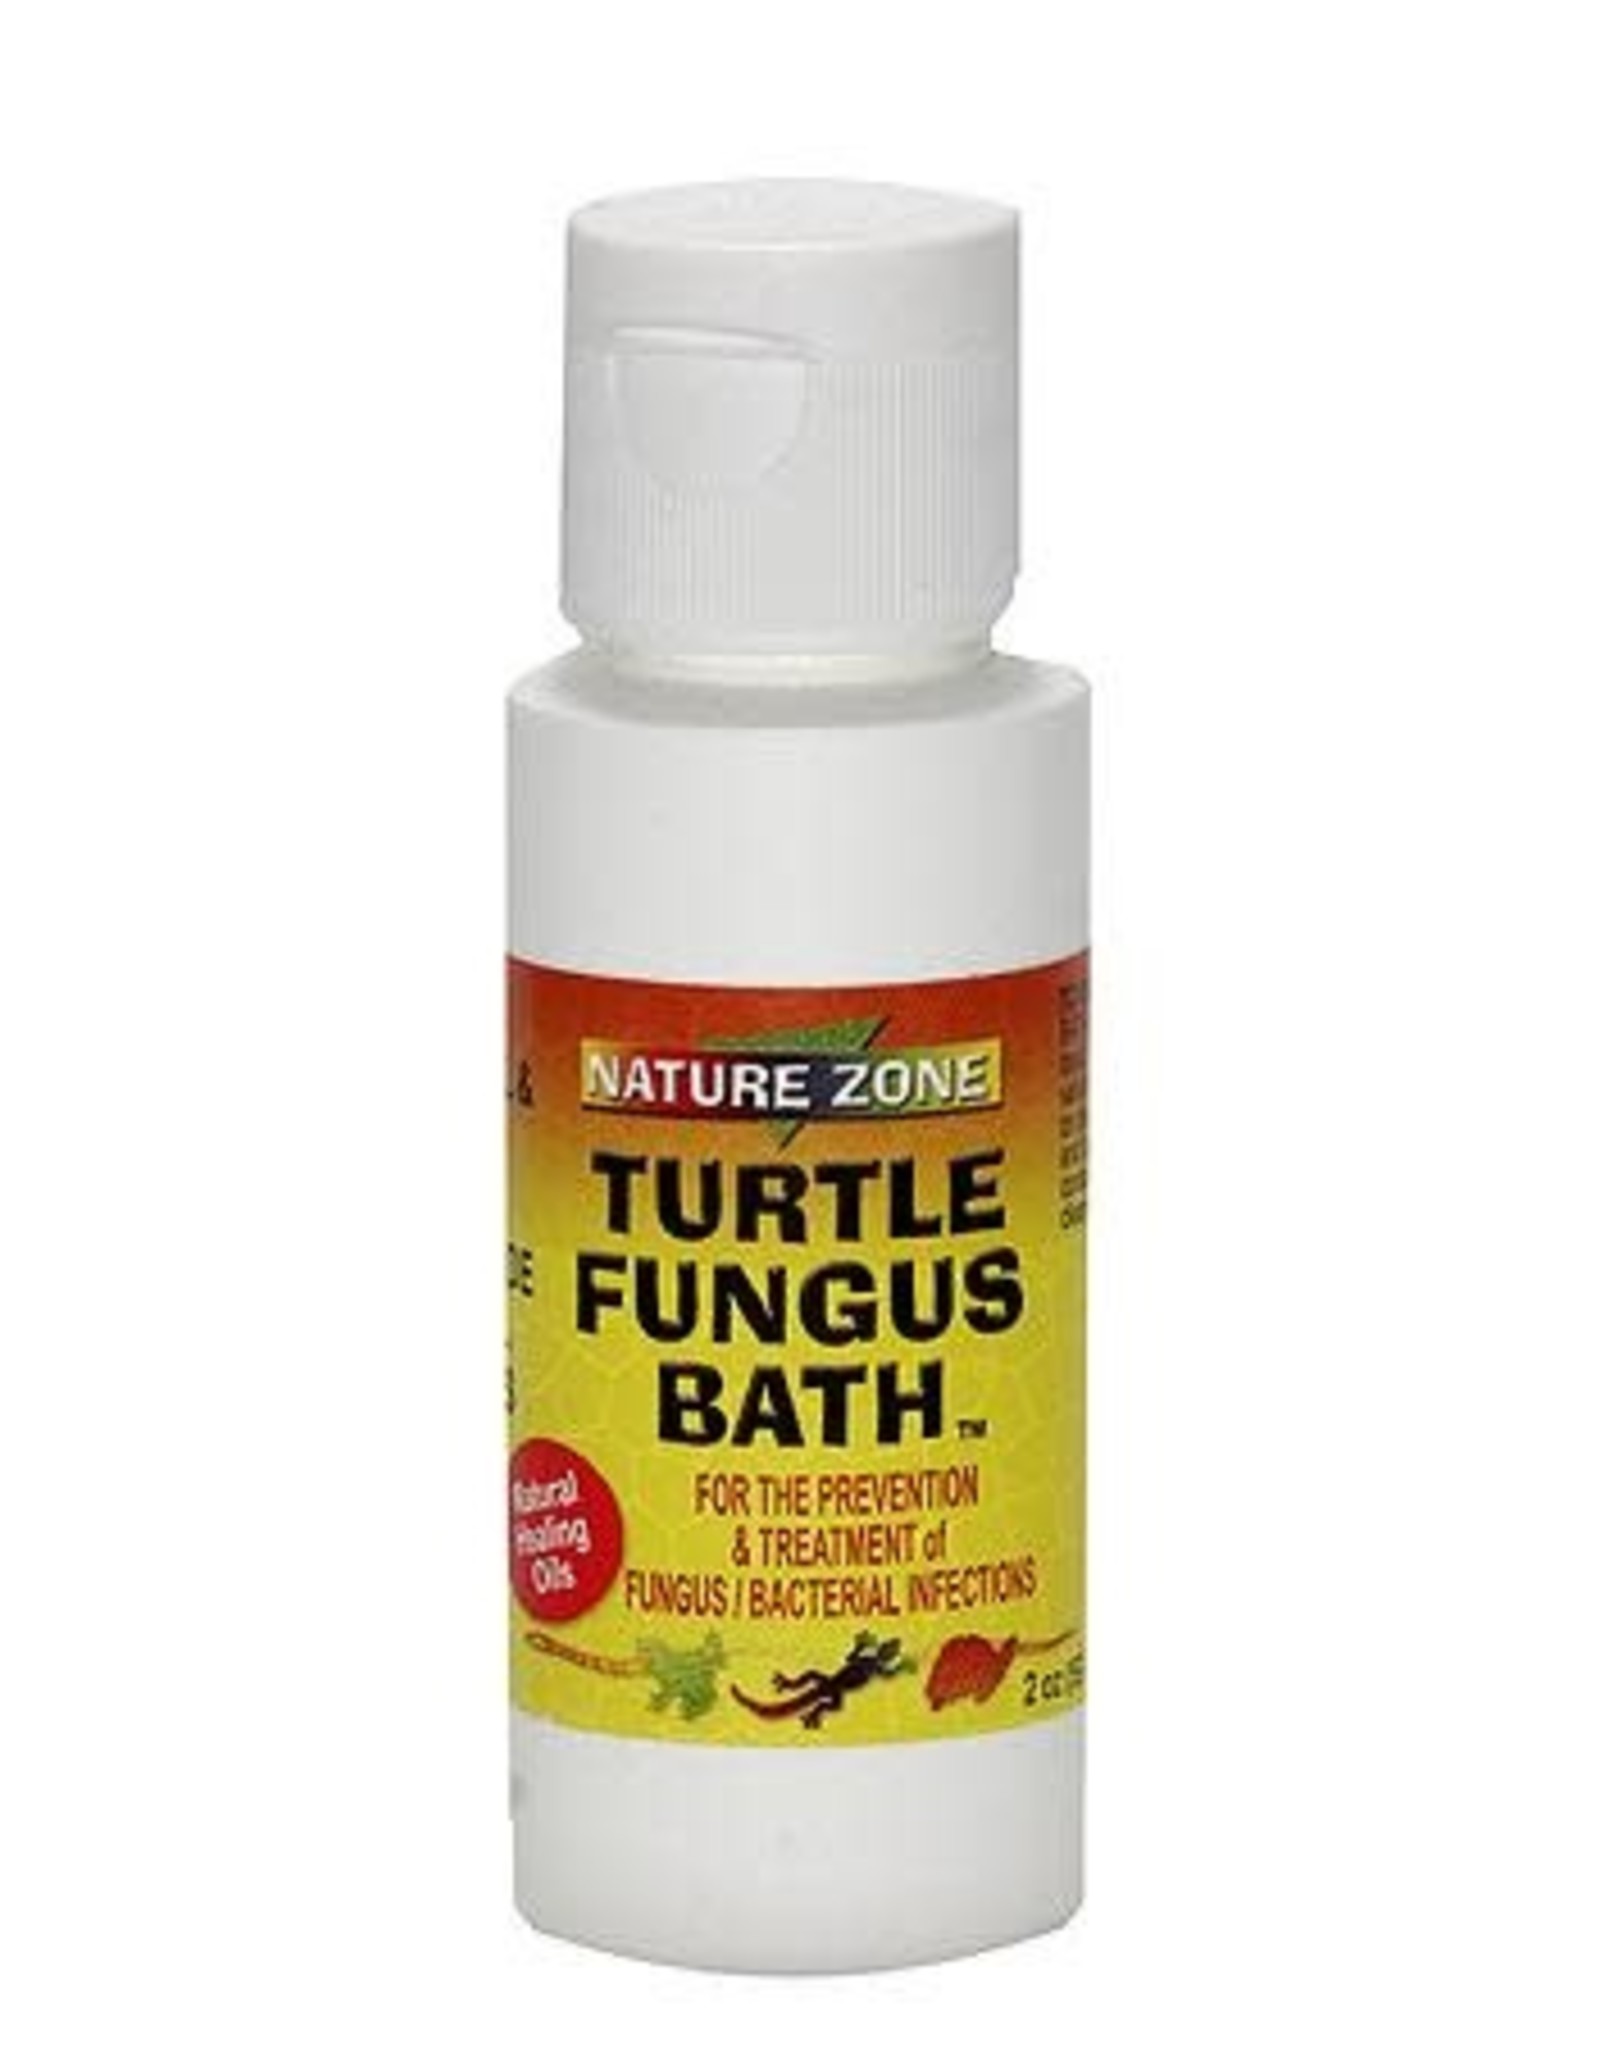 NATURE ZONE NATURE ZONE- TURTLE- FUNGUS BATH- 2 OZ